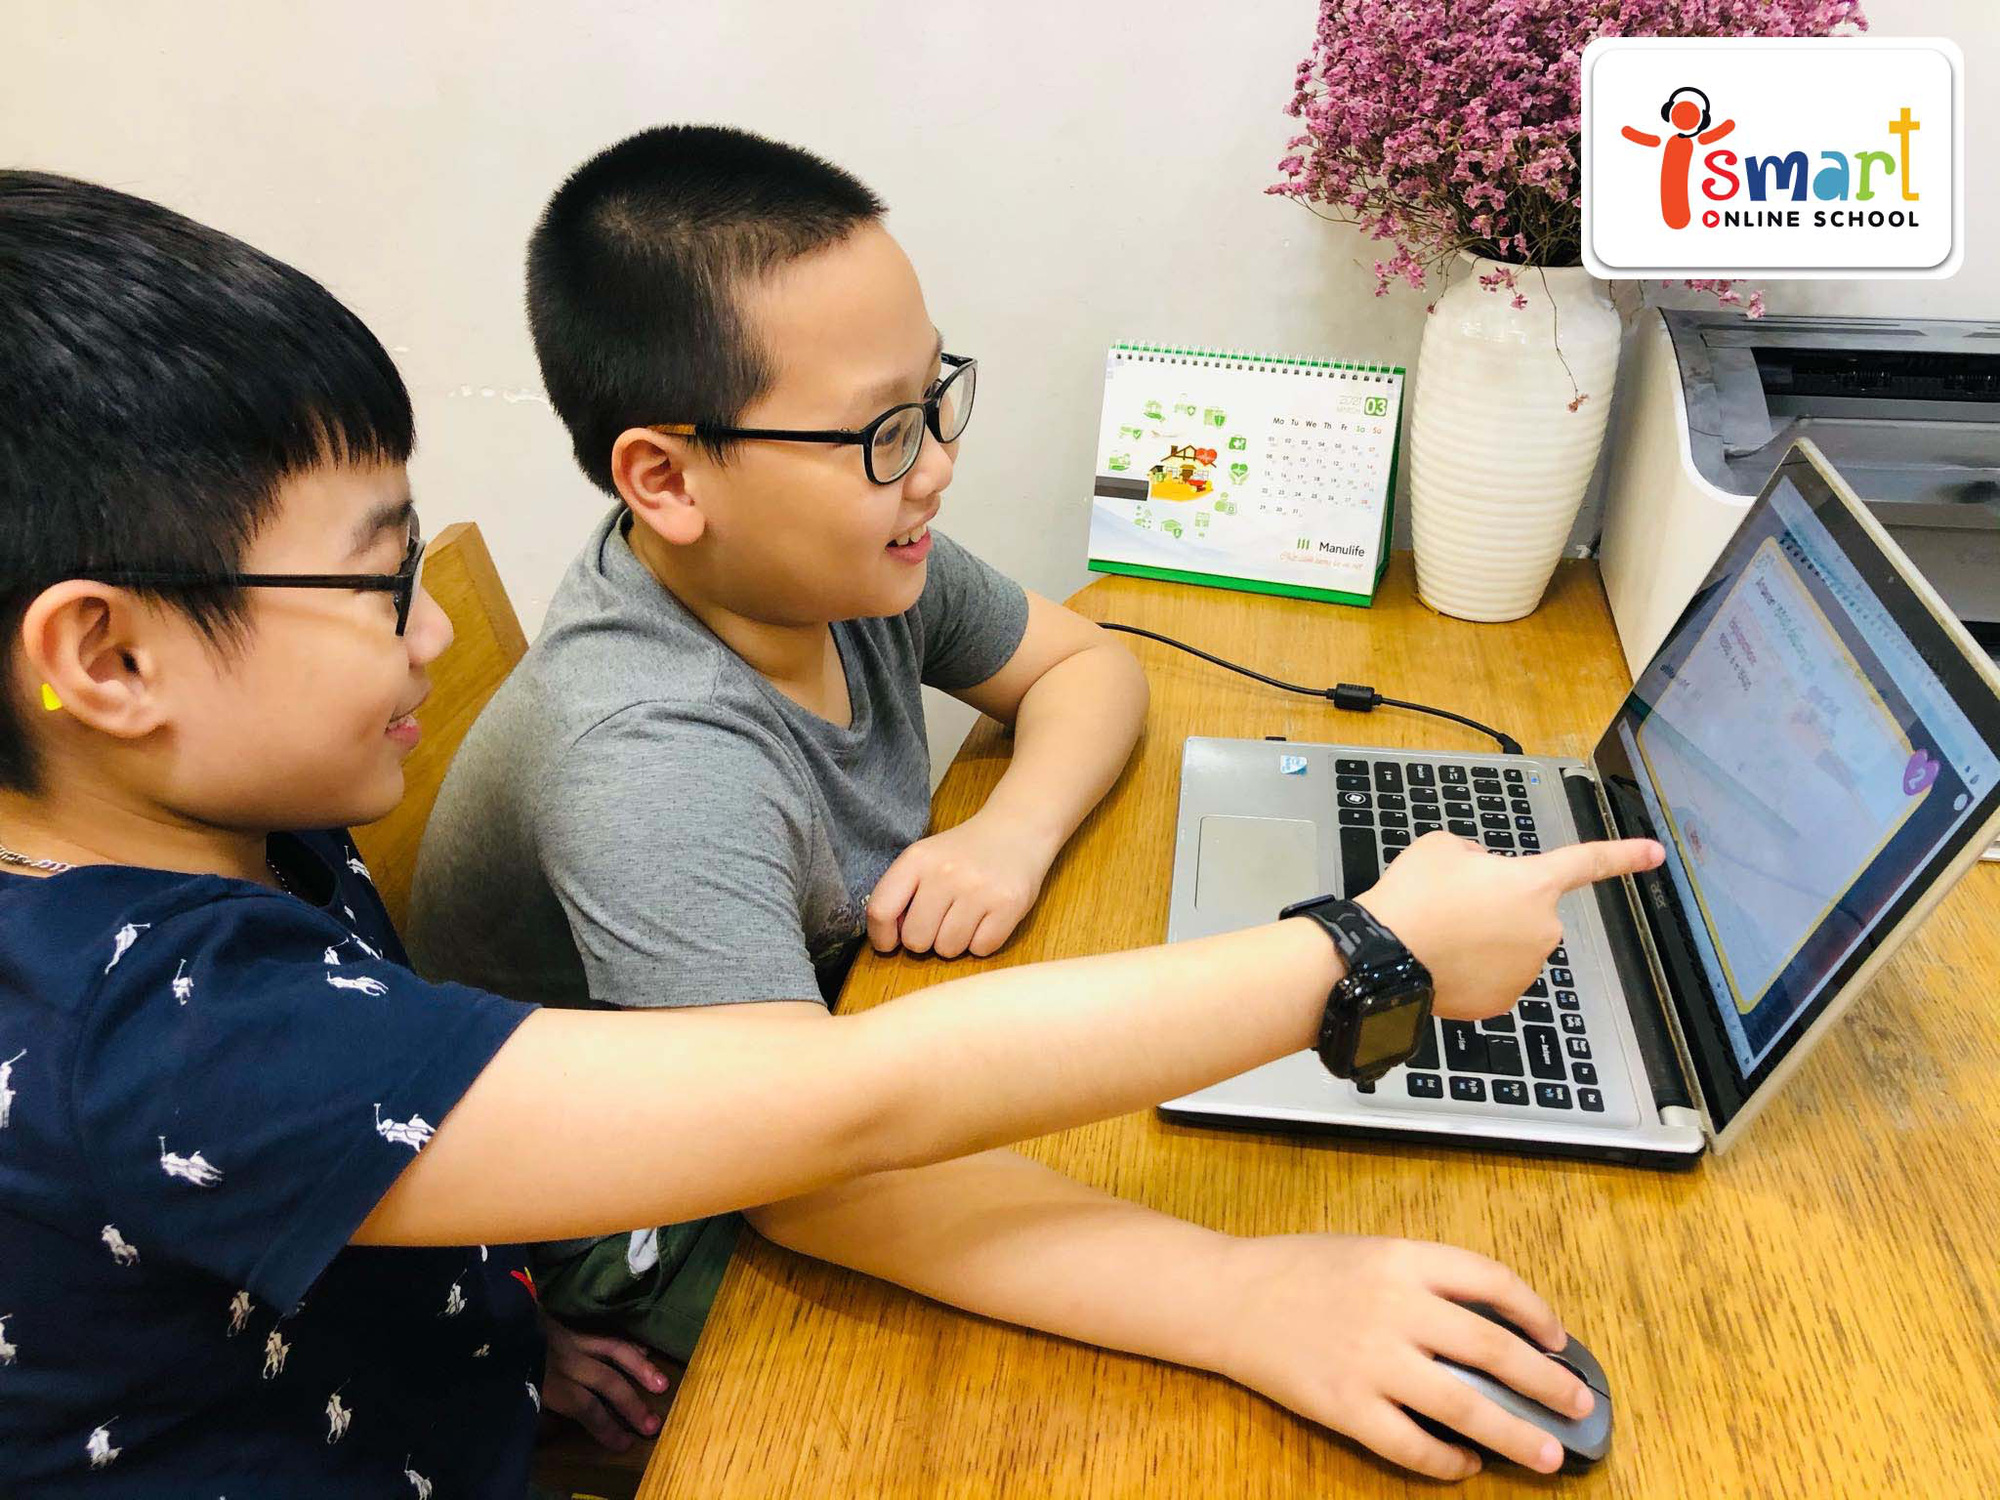 Ra mắt trường trực tuyến dạy tiếng Anh thông qua môn Toán và Khoa học lớn nhất Việt Nam - Ảnh 2.